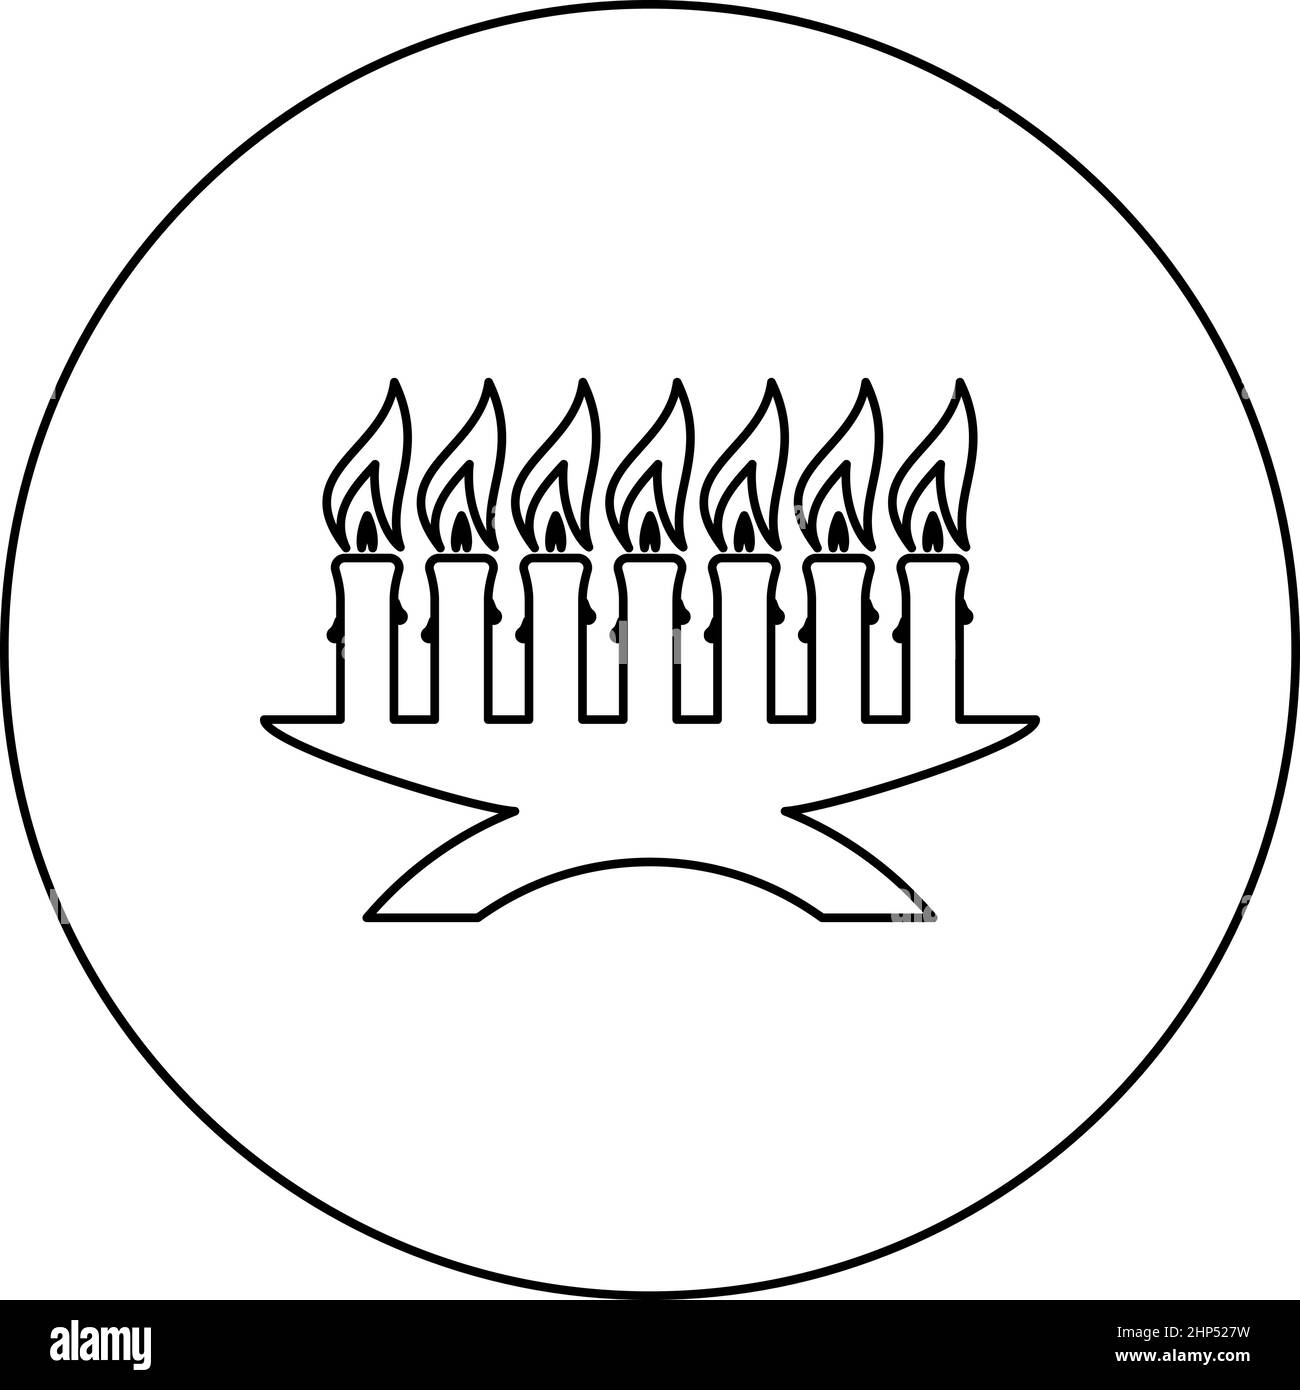 Kwanzaa Kerzen glühenden afrikanischen Urlaub Sieben Kerze auf Kerzenständer amerikanischen ethnischen kulturellen Urlaub Symbol im Kreis runden schwarzen Farbe Vektor Illustration solide Kontur Stil Bild Stock Vektor